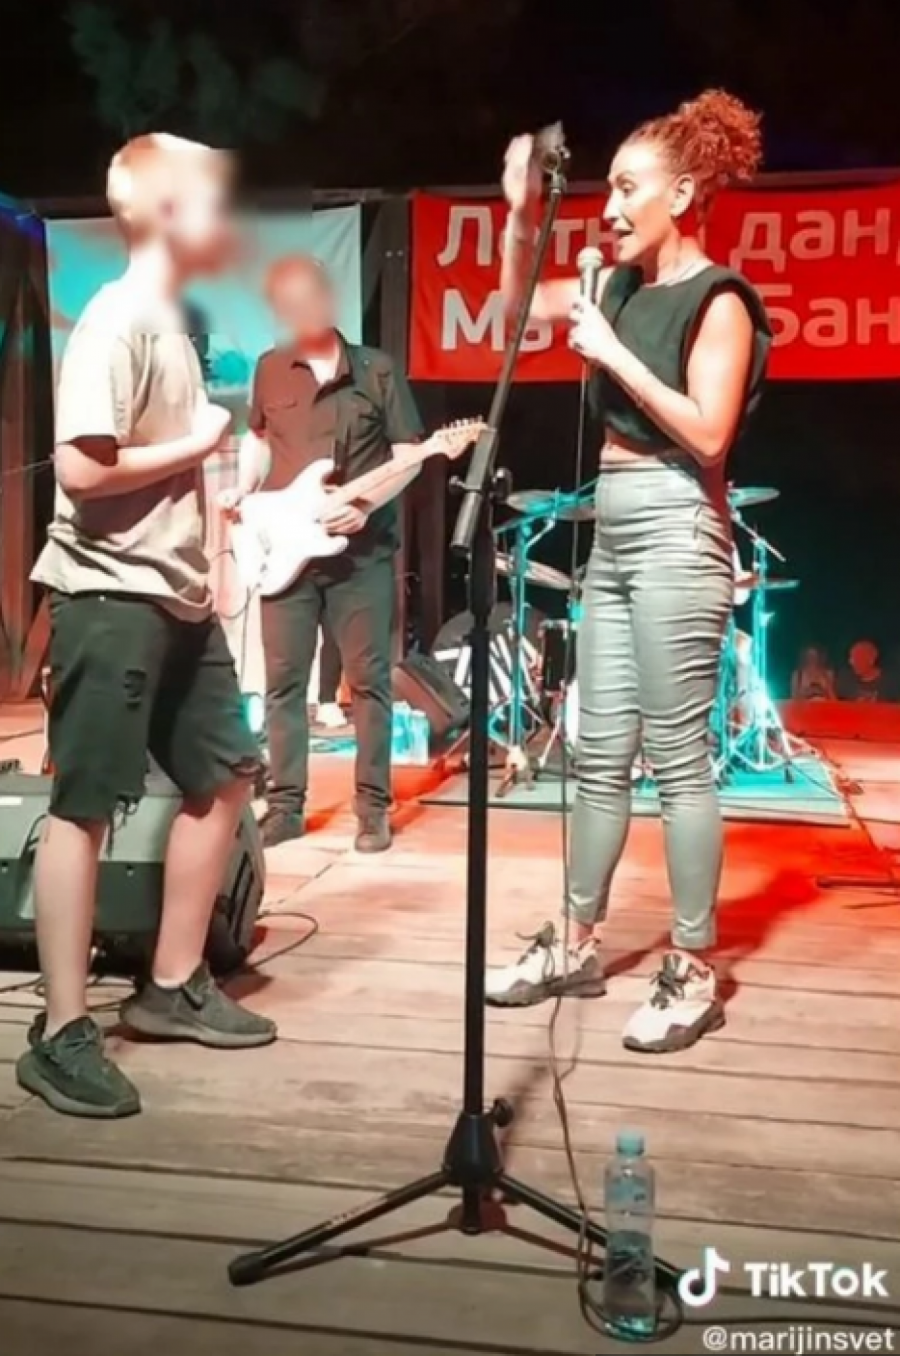 BACIO JOJ PARE NA BINU, ONA PREKINULA NASTUP Haos srpske pevačice, očitala mu lekciju pred publikom, nije mogla da se kontroliše